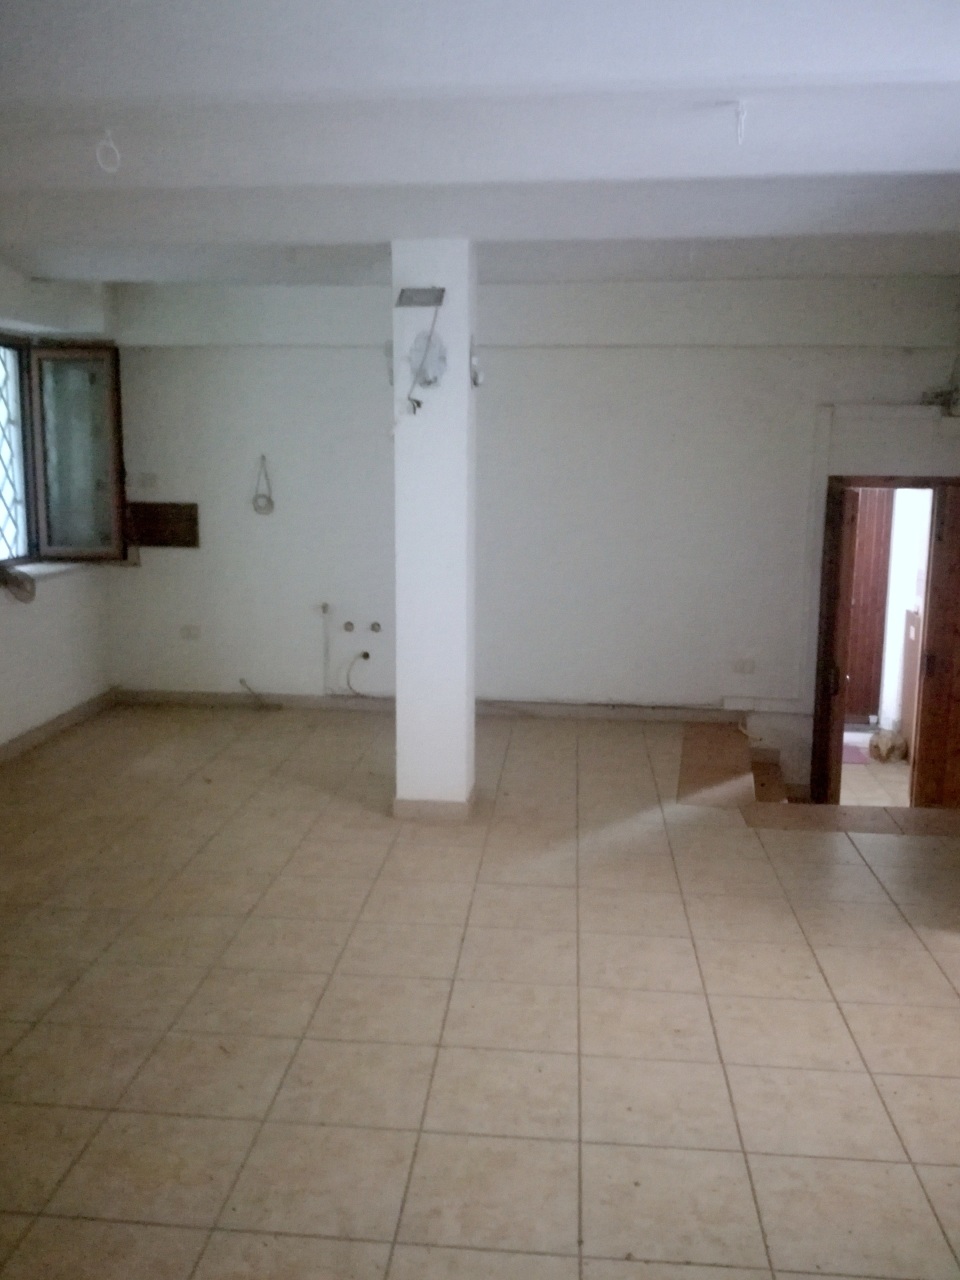 Appartamento in vendita a Penne, 1 locali, prezzo € 20.000 | PortaleAgenzieImmobiliari.it